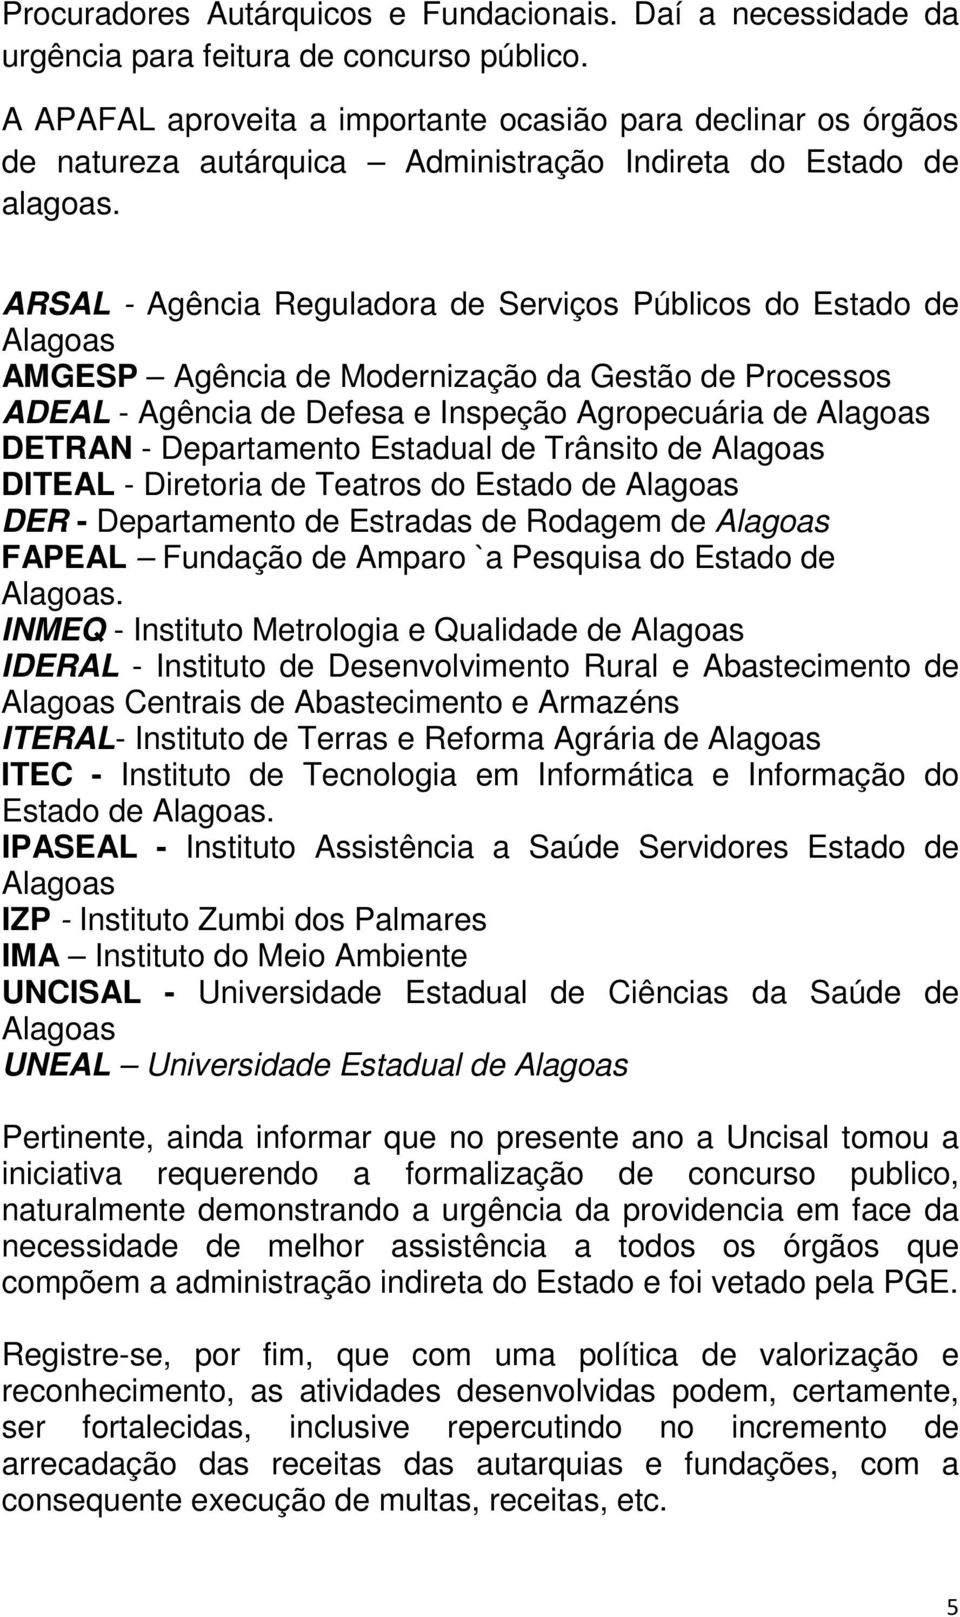 ARSAL - Agência Reguladora de Serviços Públicos do Estado de Alagoas AMGESP Agência de Modernização da Gestão de Processos ADEAL - Agência de Defesa e Inspeção Agropecuária de Alagoas DETRAN -